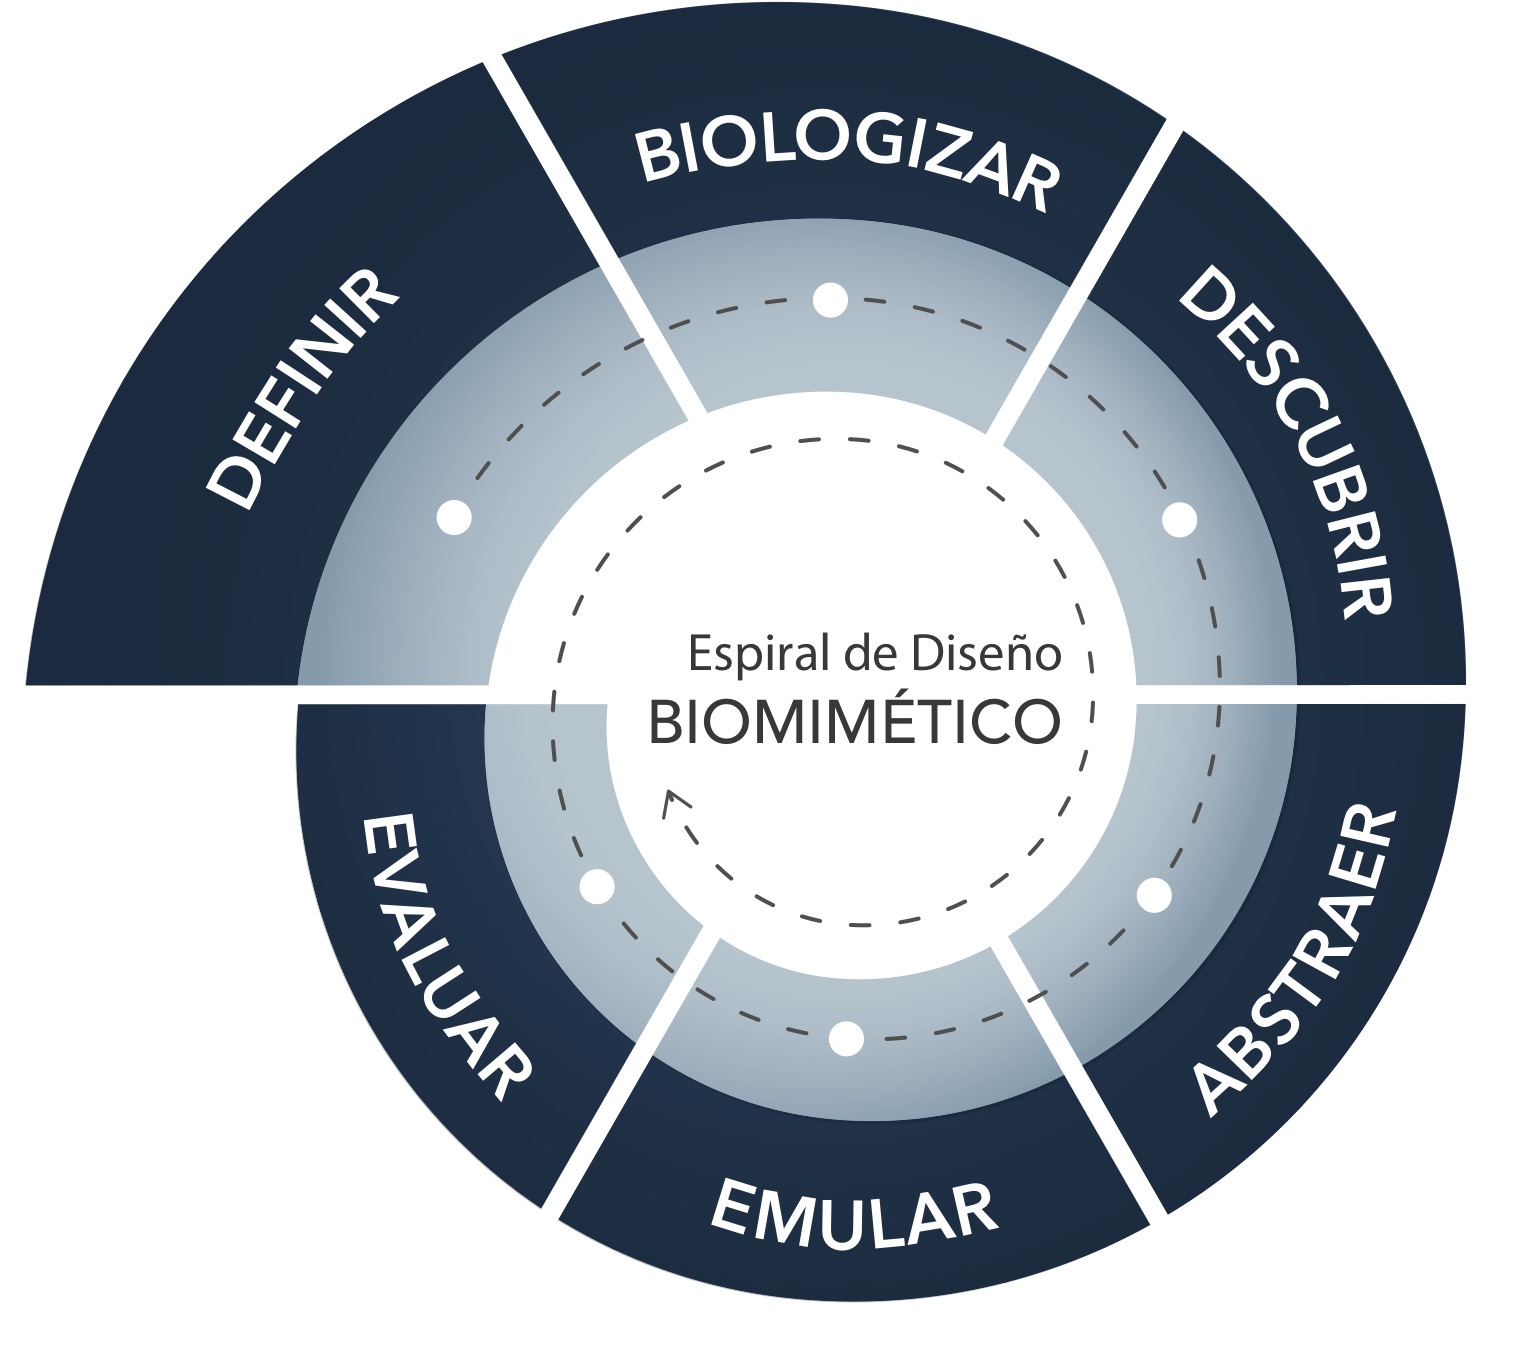 Figura 2. Representación del proceso de investigación en biomimética. Figura tomada de https://toolbox.biomimicry.org/es/metodos/